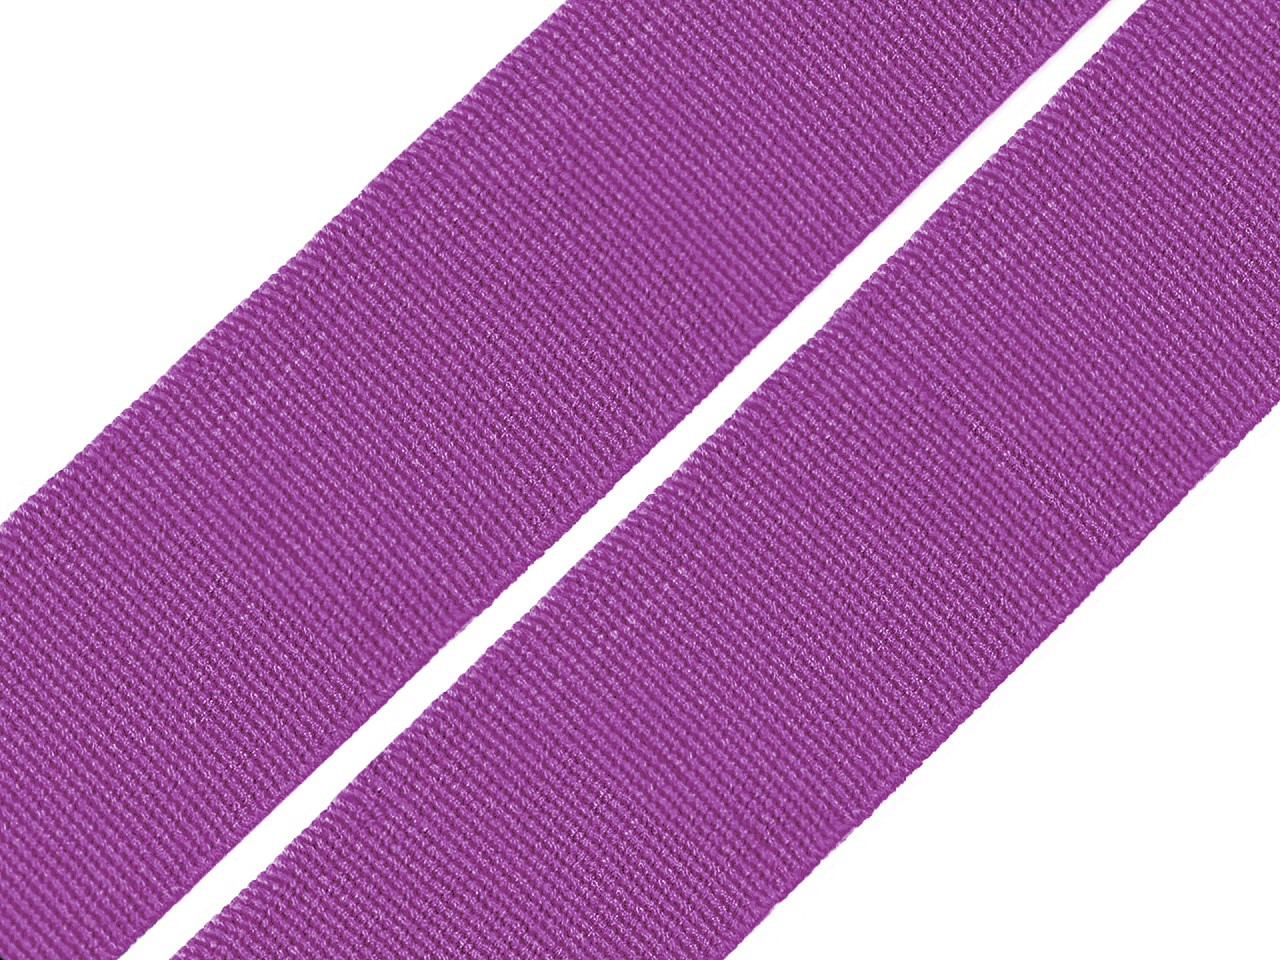 Pruženka hladká šíře 20 mm tkaná barevná, barva 1639 fialová